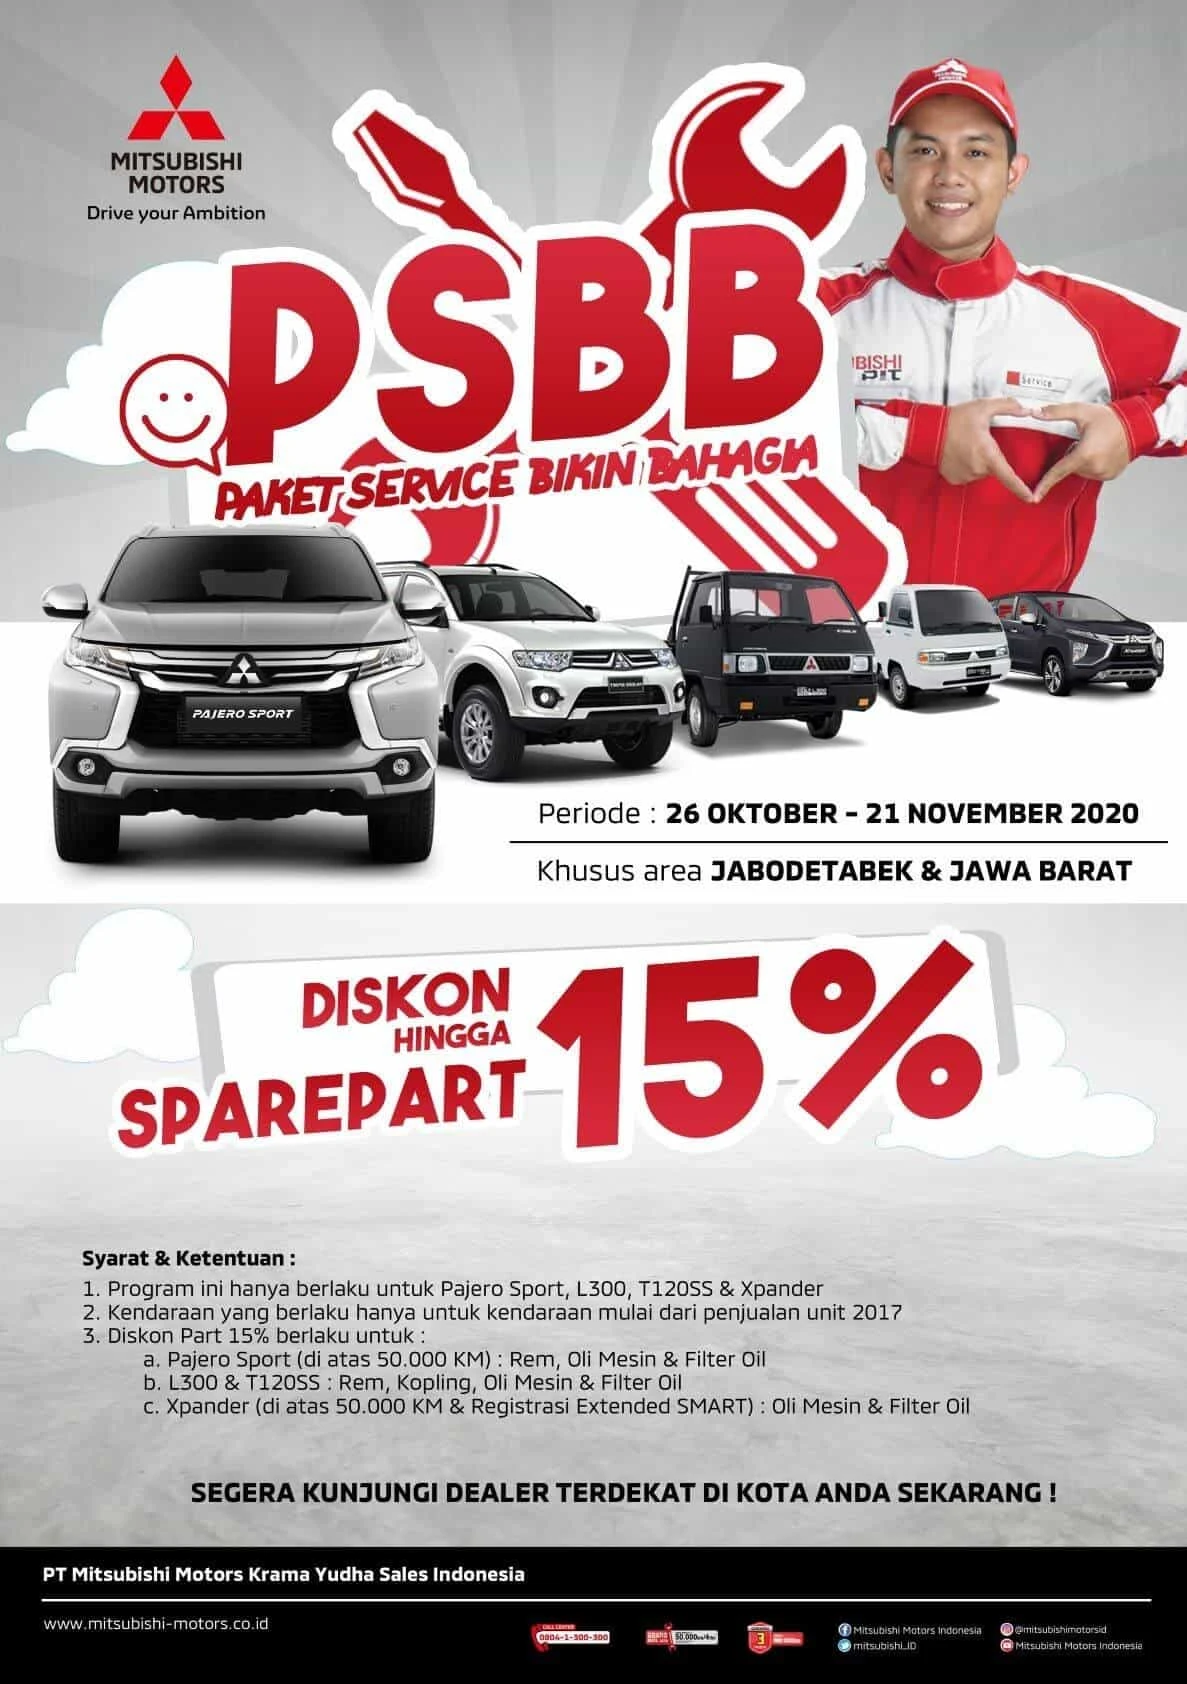 MMKSI Hadirkan “Regional Campaign”, Program Spesial Bagi Konsumen Mitsubishi di Indonesia